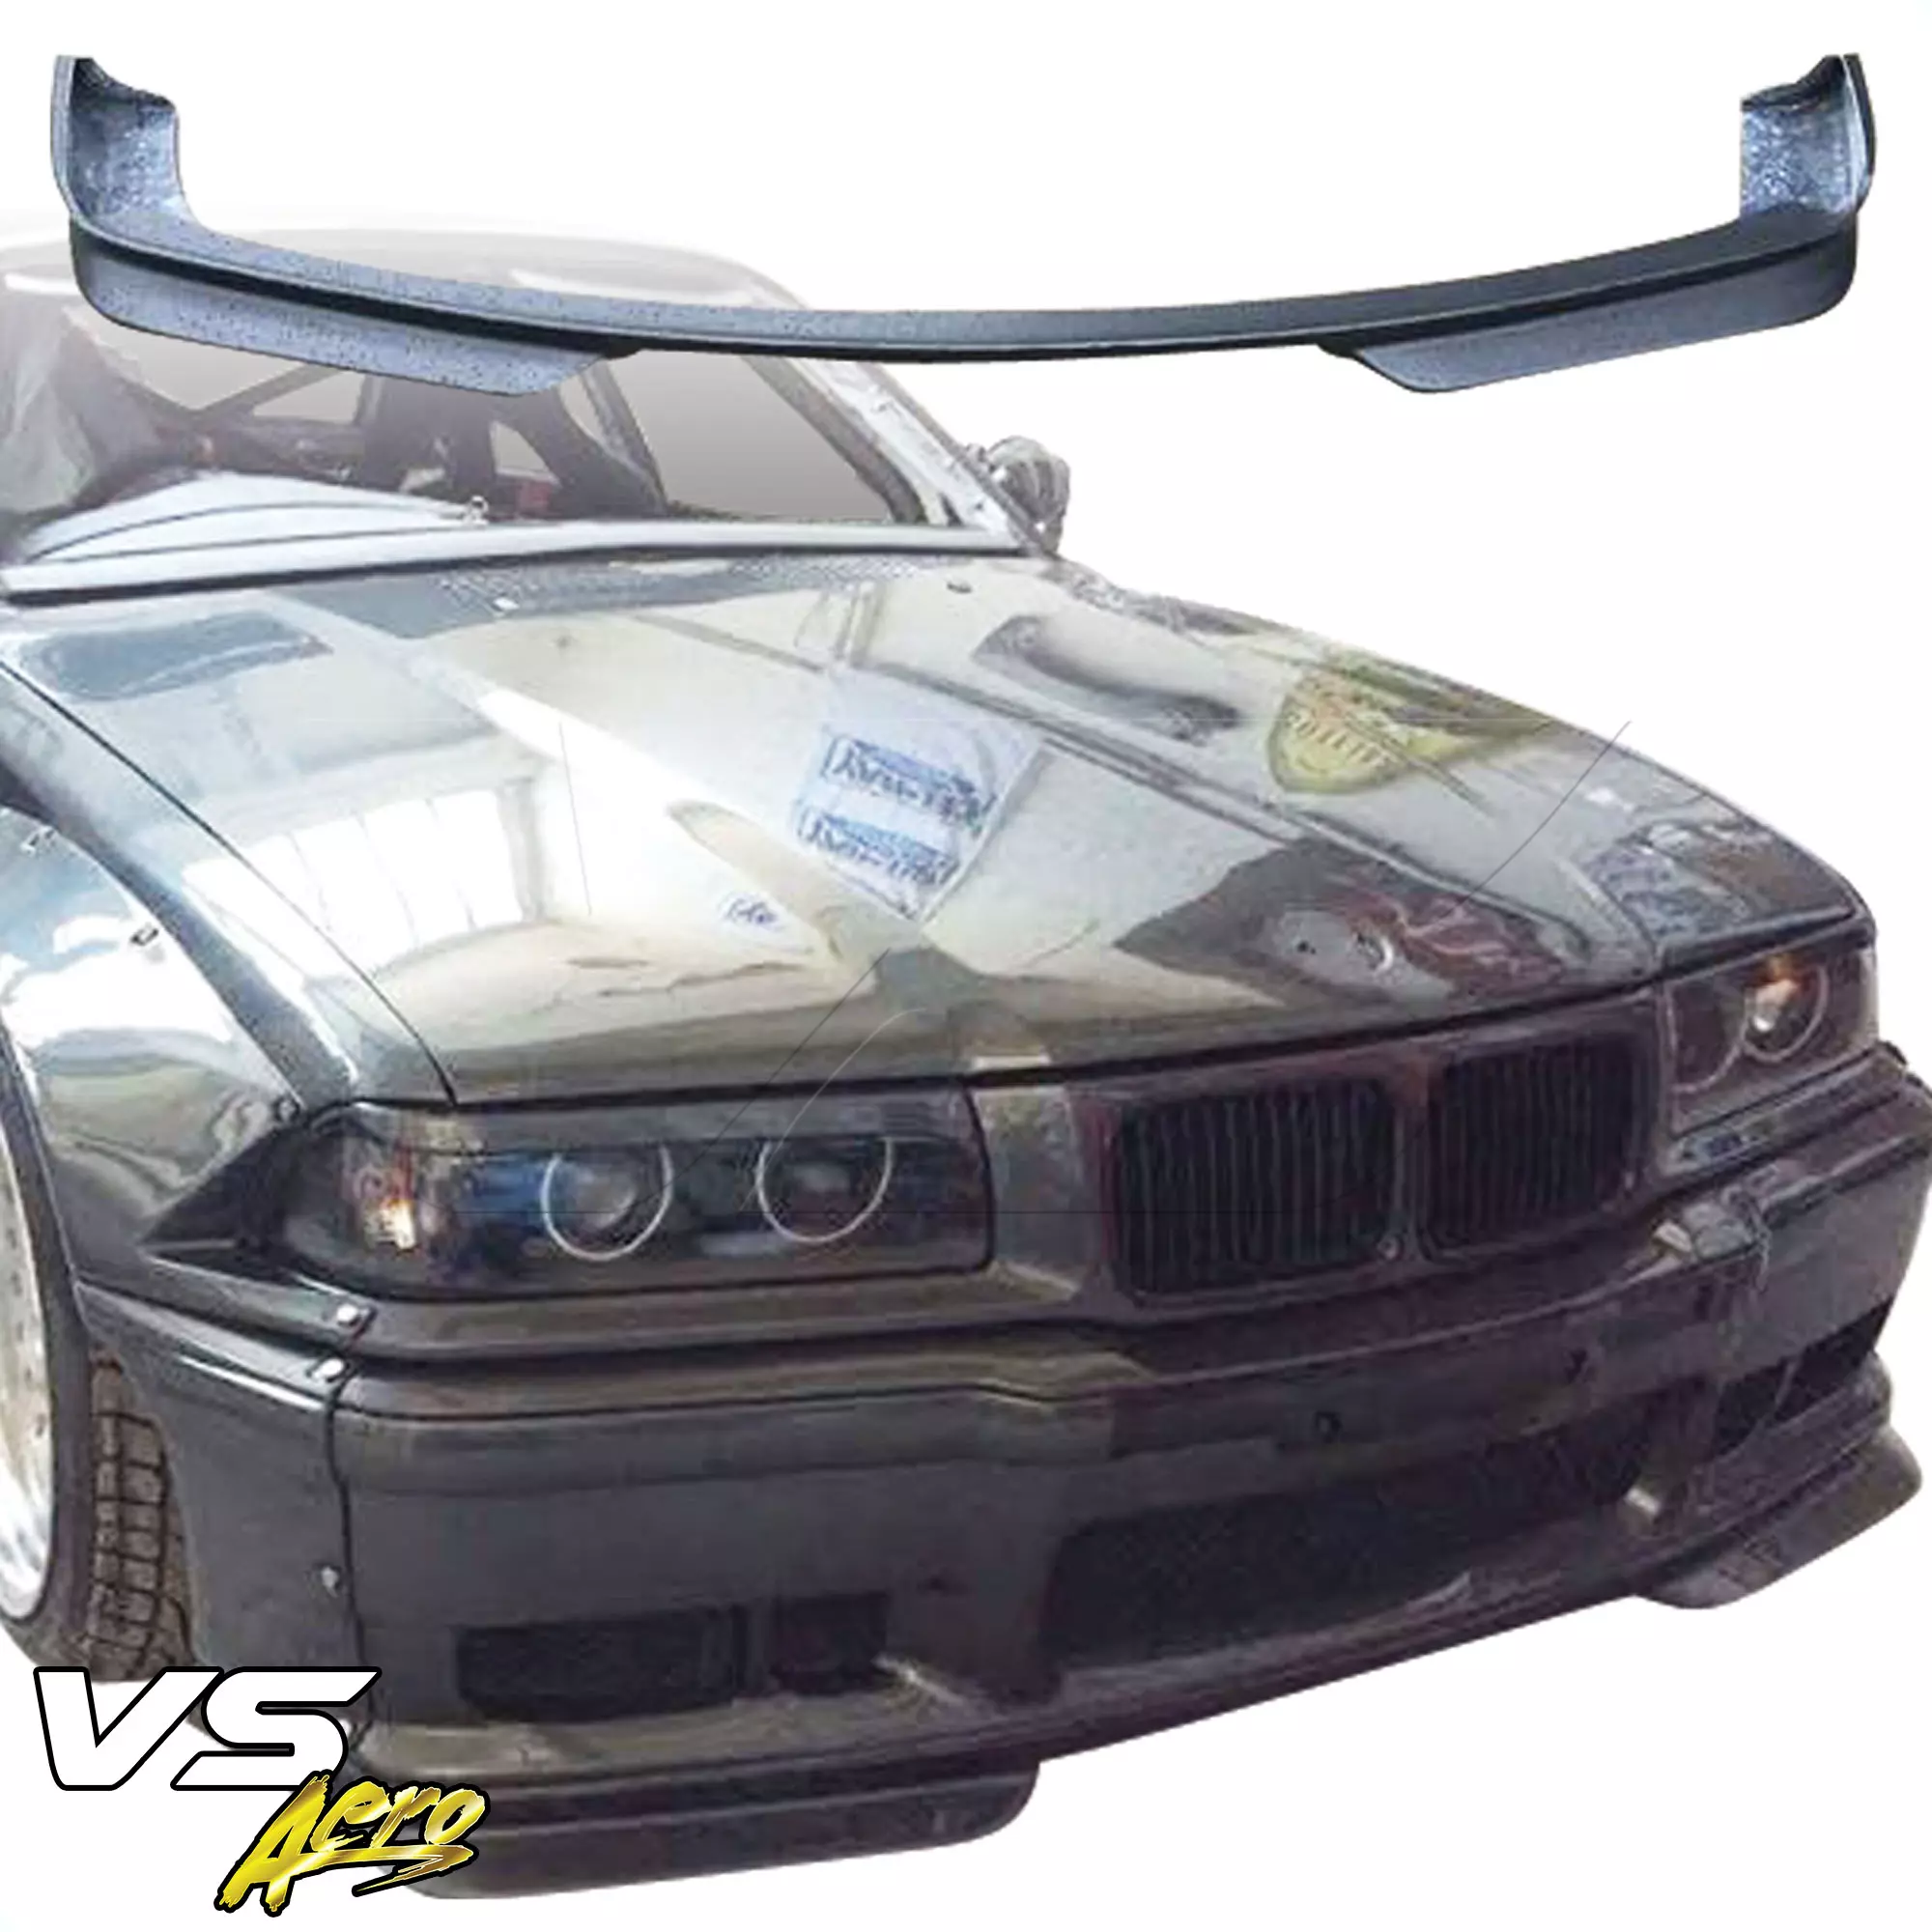 VSaero FRP TKYO Wide Body Front Lip > BMW 3-Series 325i 328i E36 1992-1998 > 2dr Coupe - Image 5